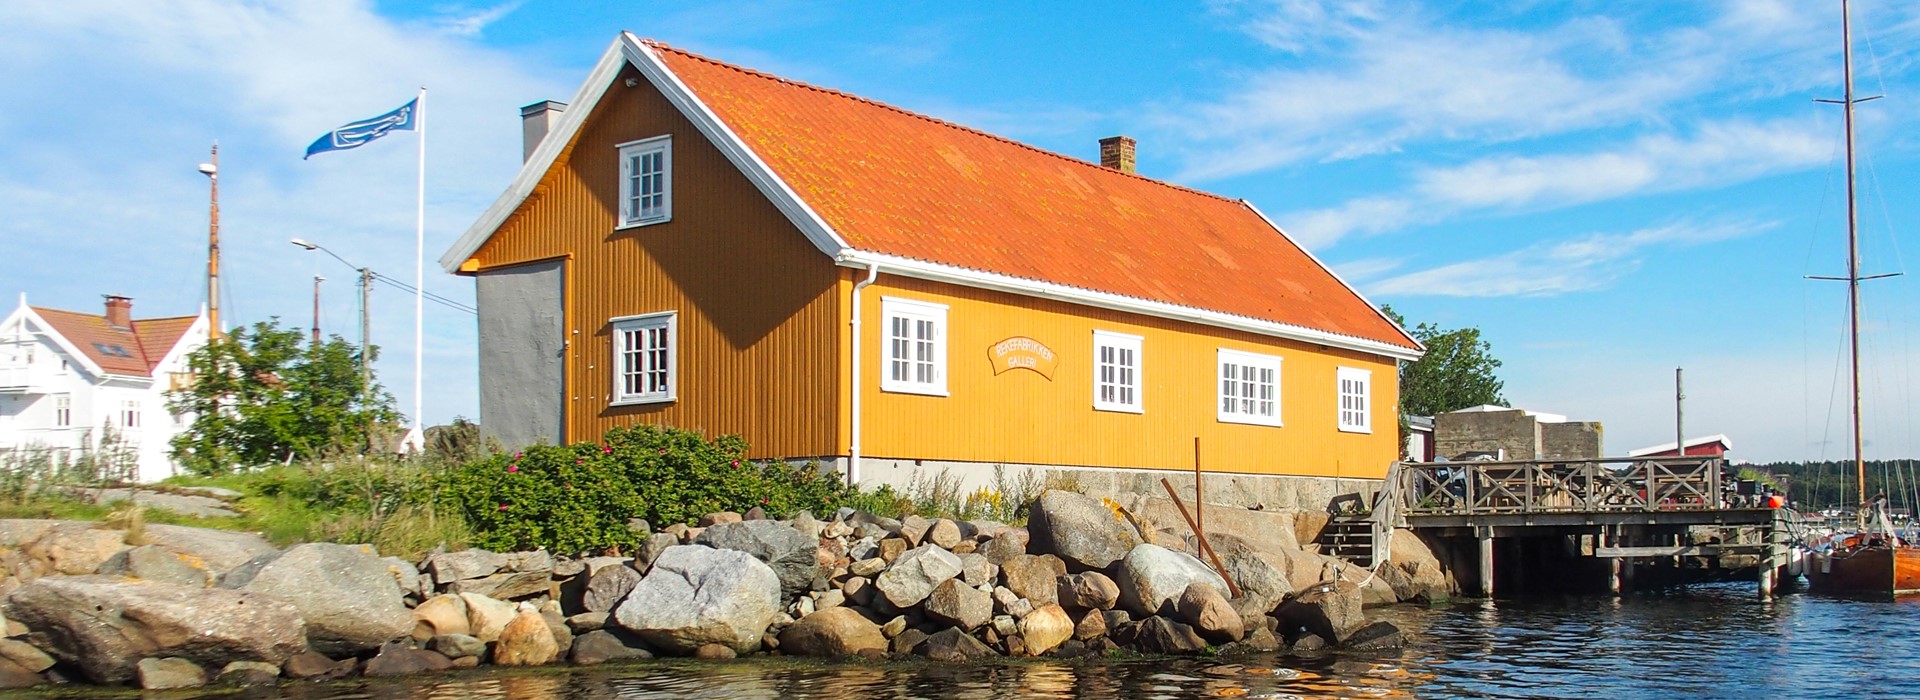 Case: Norsk rejefabrik bliver genoplivet med speciallavede vinduer